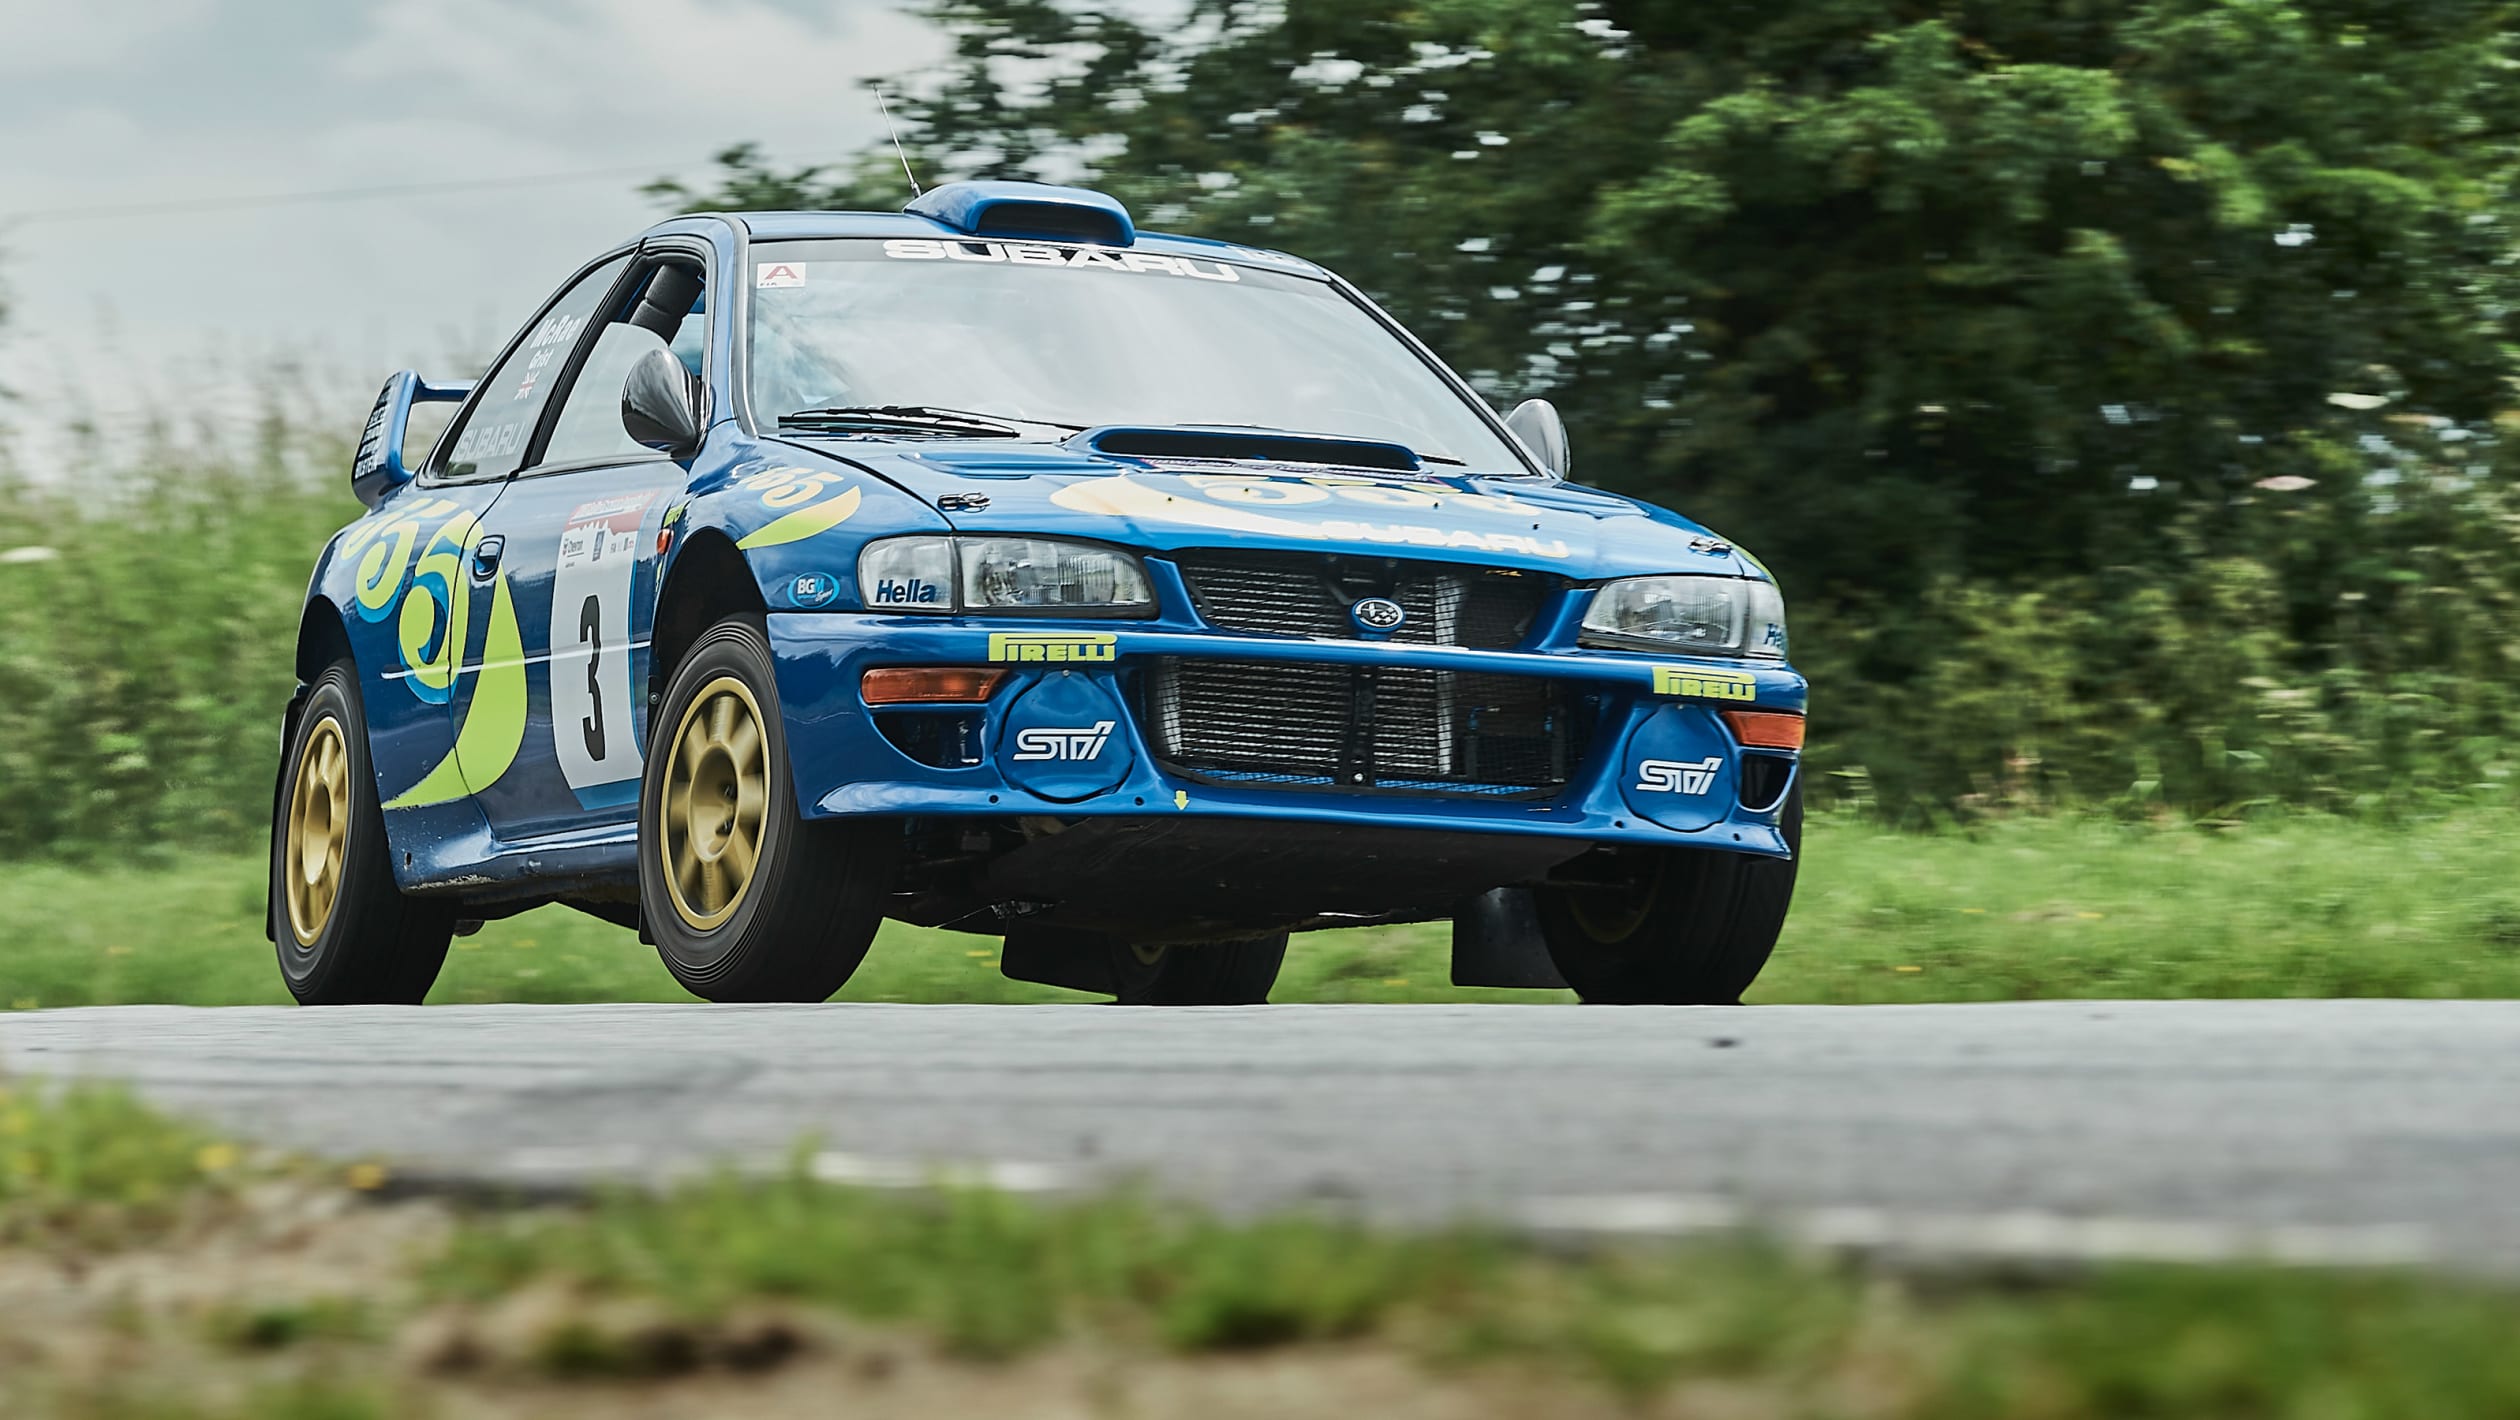 Driving Colin McRae's 1997 Subaru Impreza WRC pictures evo